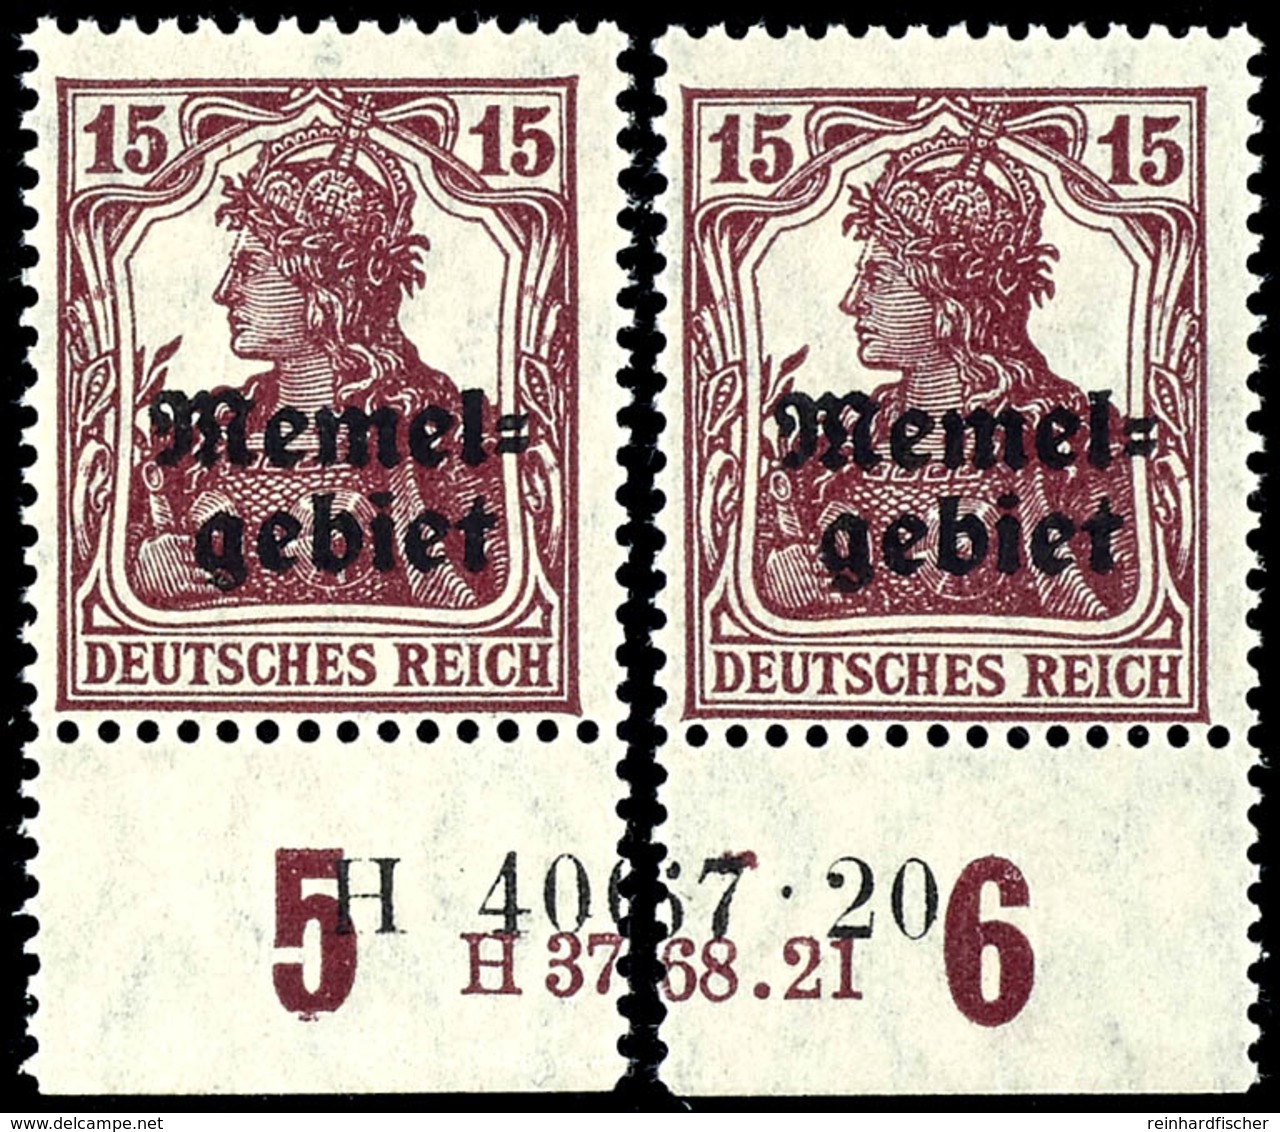 15 Pfennig Germania Mit Aufdruck, Senkrecht Geriffelte Gummierung, Postfrisch, Geteiltes Unterrandpaar Mit HAN-U 3768.21 - Memelgebiet 1923